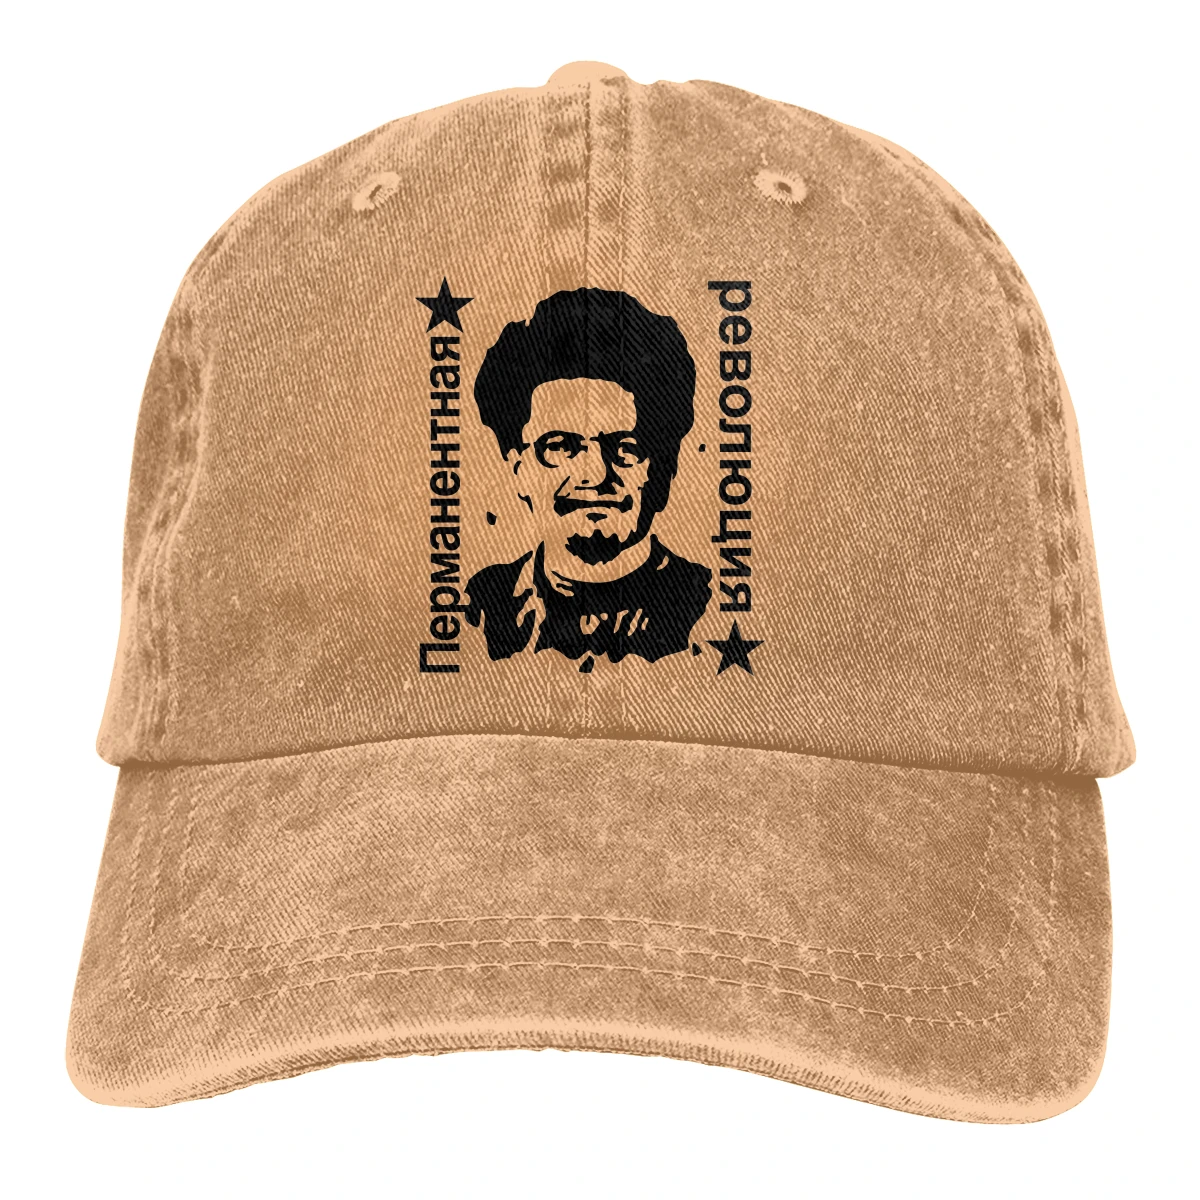 

Leon Trotsky Permanent Revolution Baseball Cap Men Communism Marxism Socialism CCCP Soviet Union Caps colors Women Snapback Caps